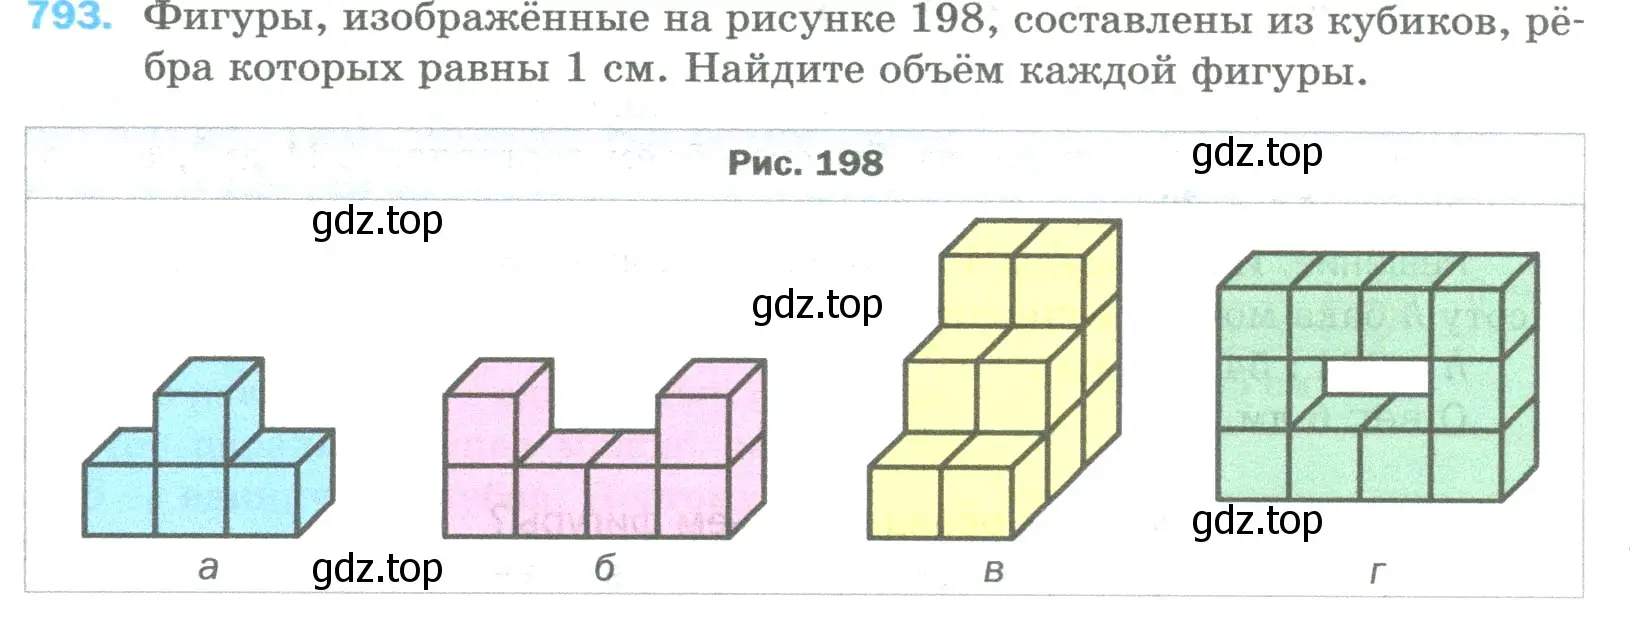 Условие номер 793 (страница 180) гдз по математике 5 класс Мерзляк, Полонский, учебник